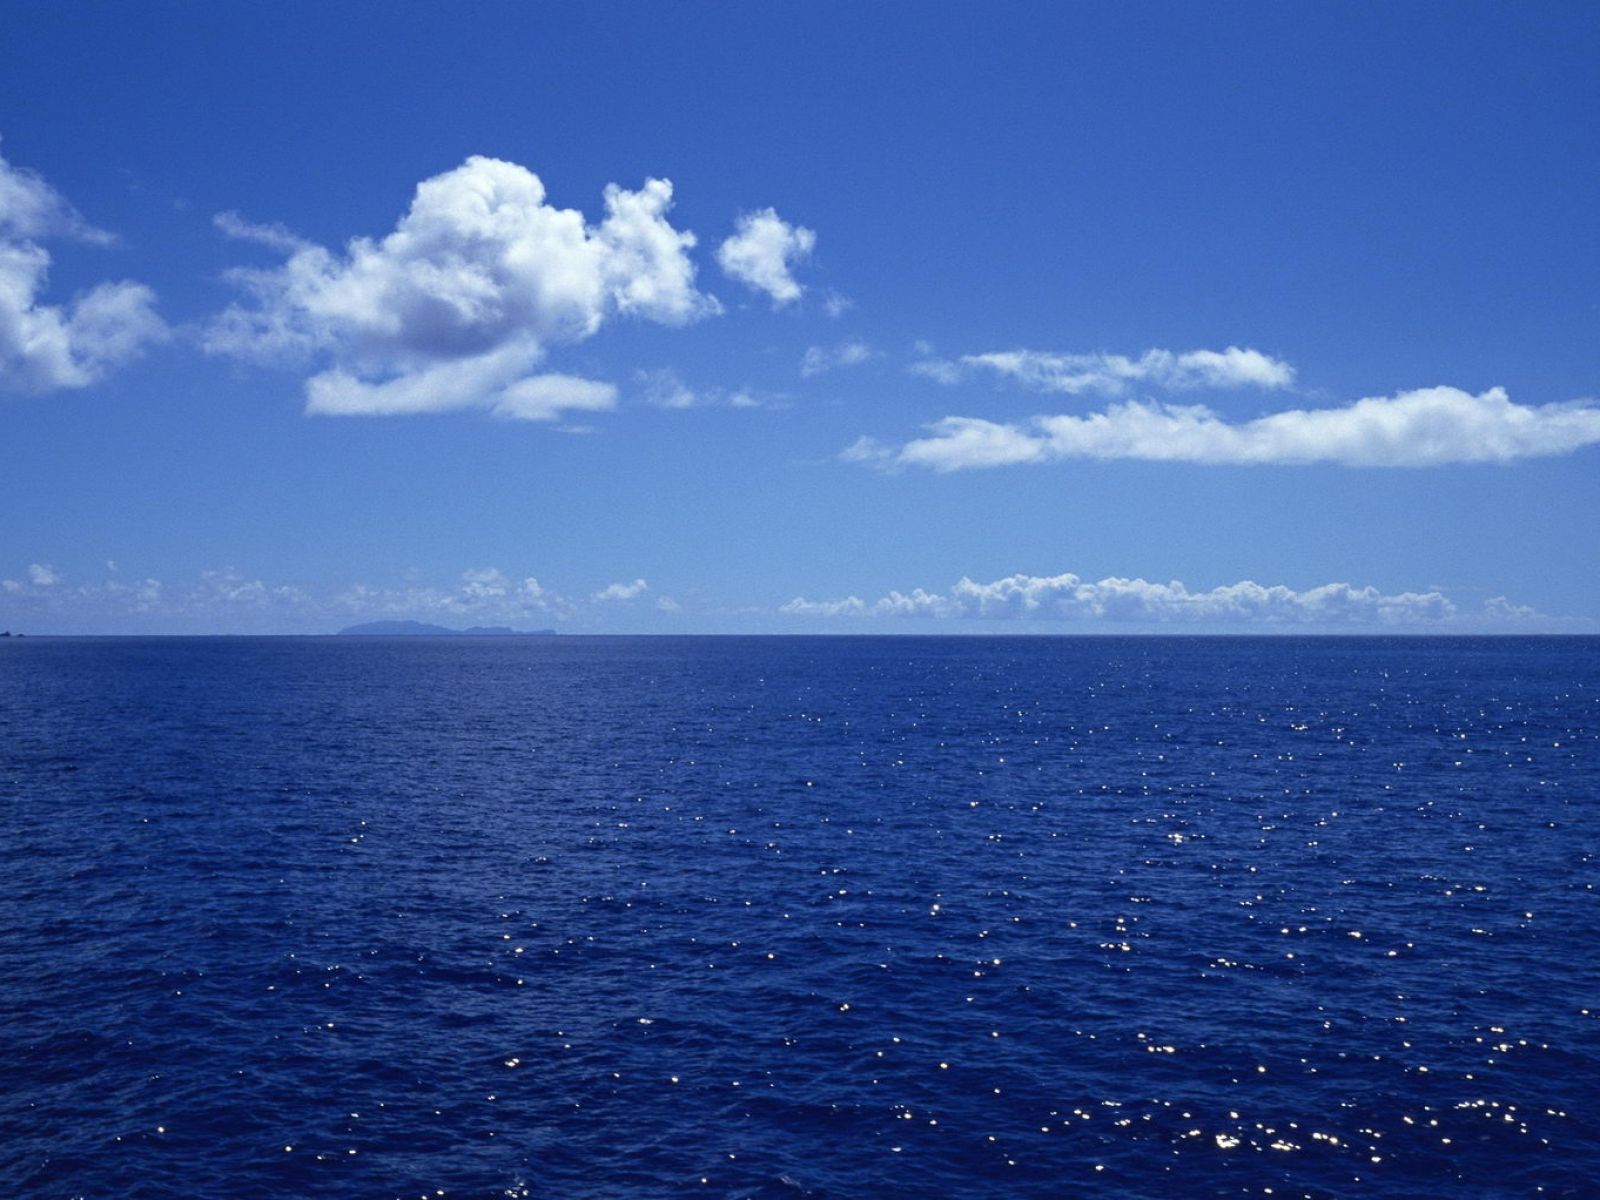 静谧,纯净,深邃的海之蓝!